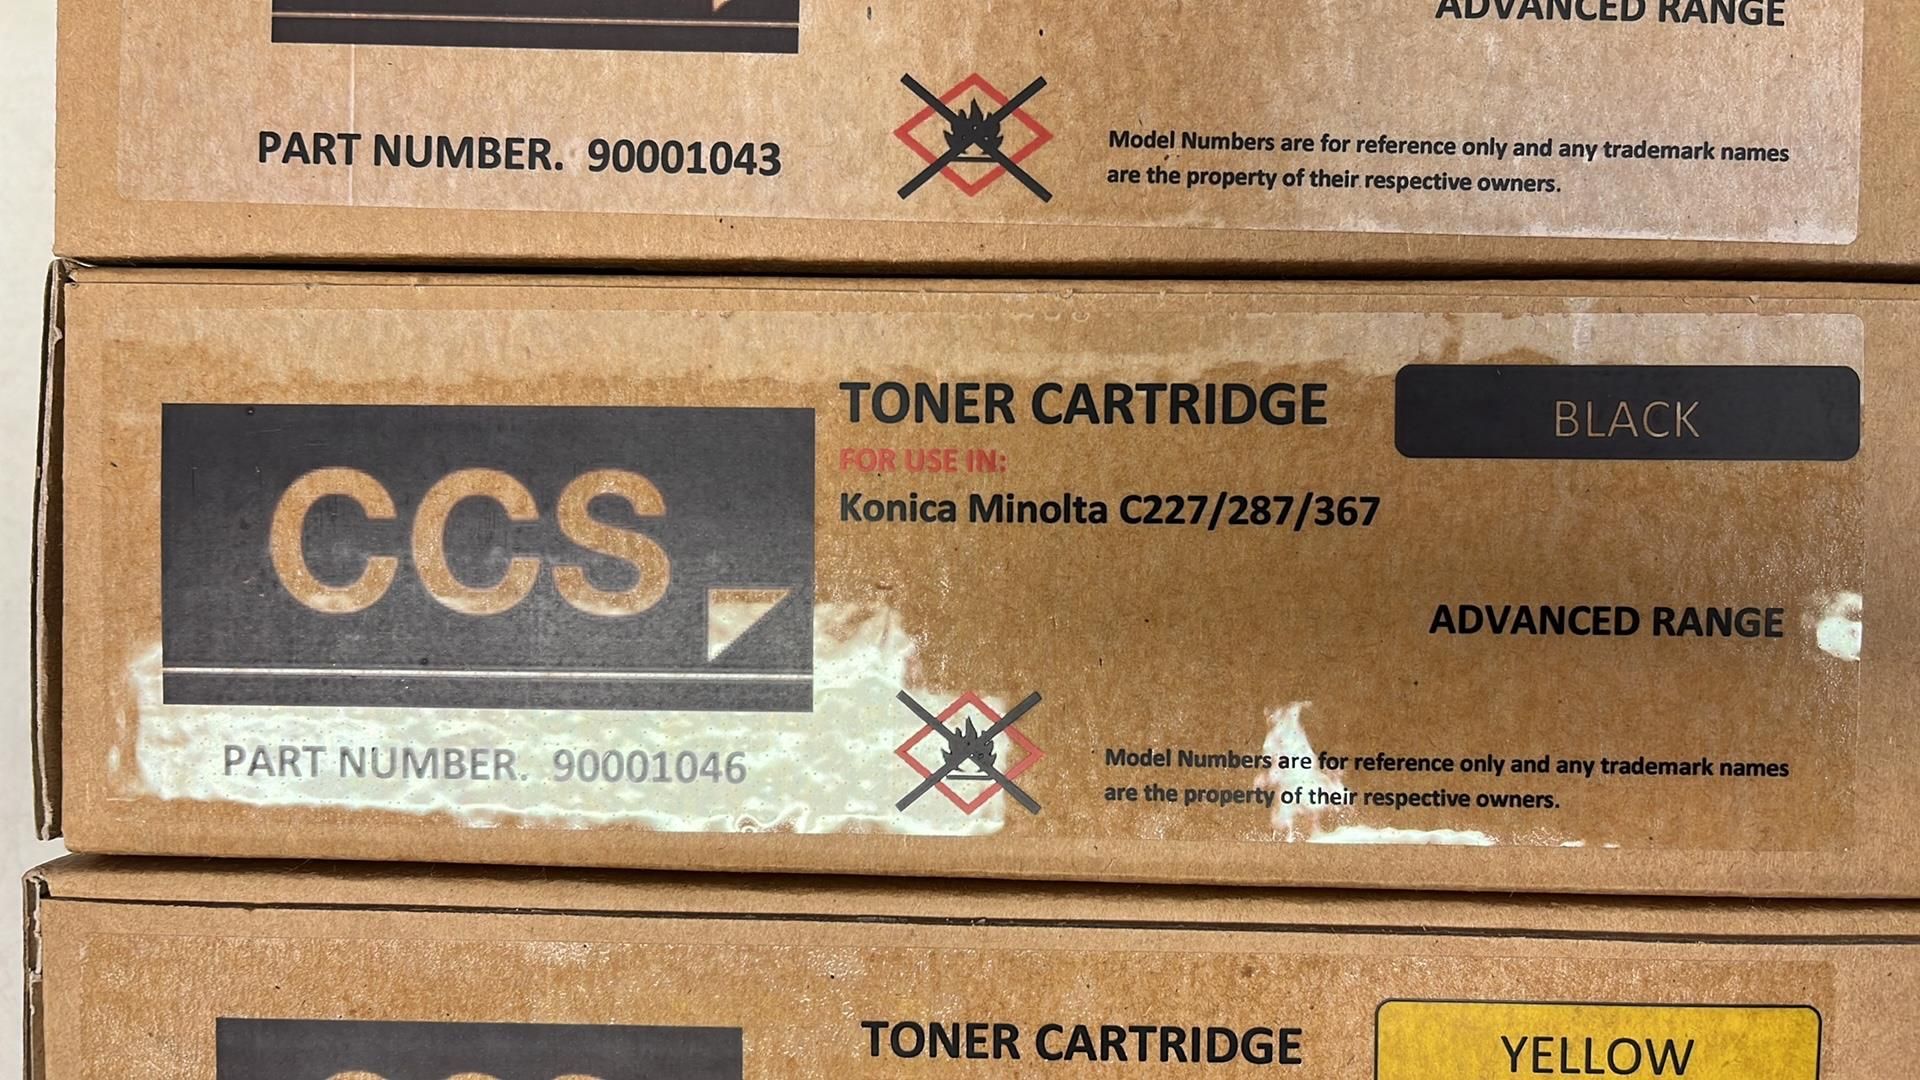 4 x Ccs Toner Cartridges - Image 3 of 5